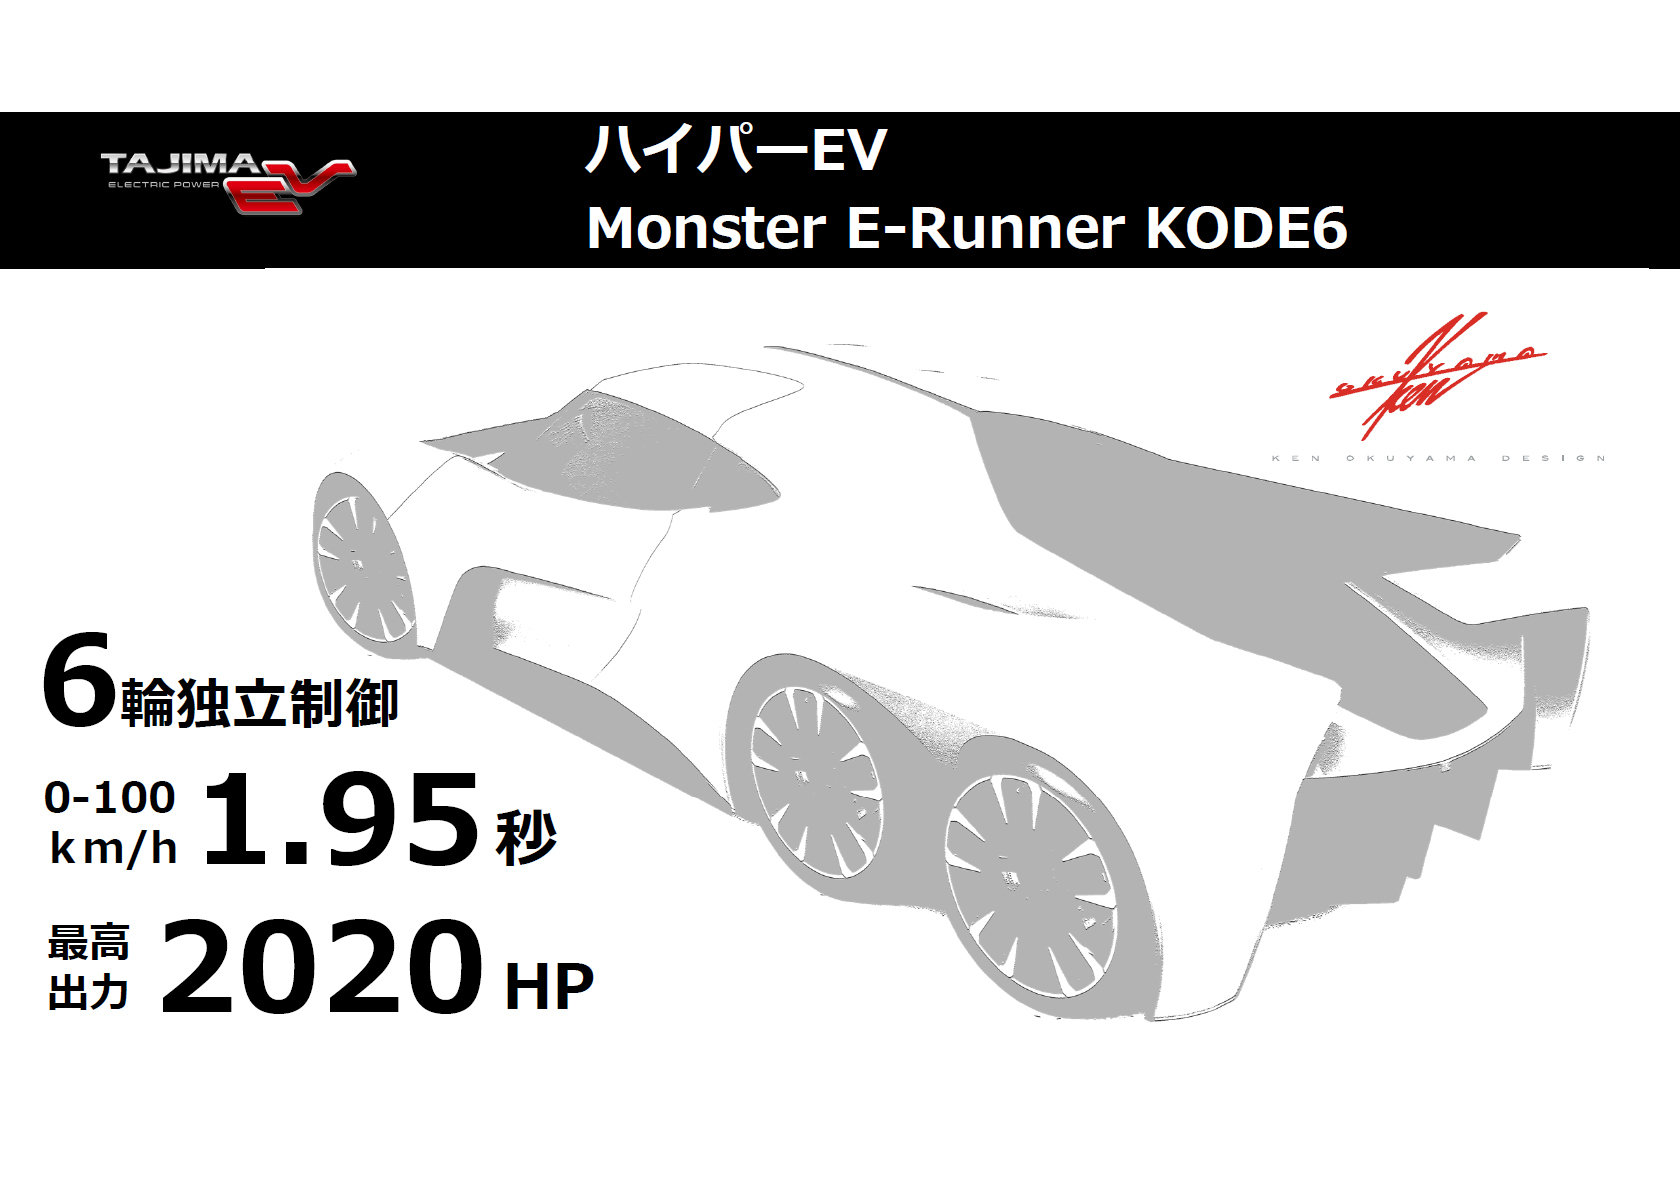  Monster E-Runner KODE6̊TviNbNŊgj oTF^W}EV